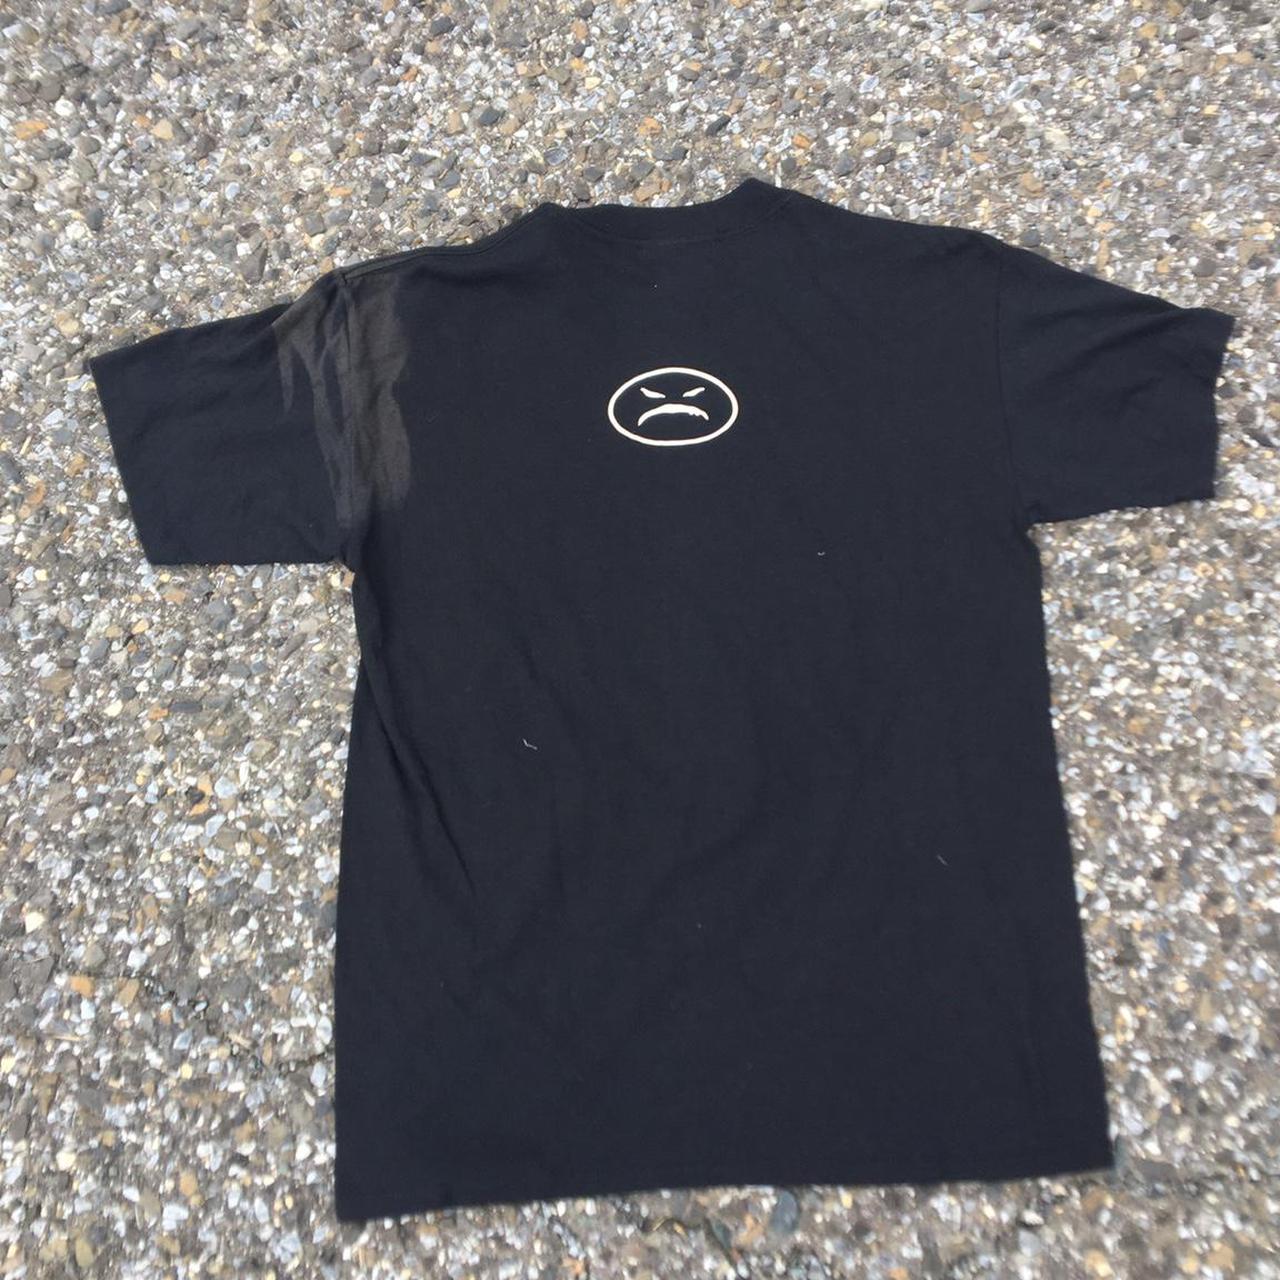 Onyx - USG Retro Shirt 